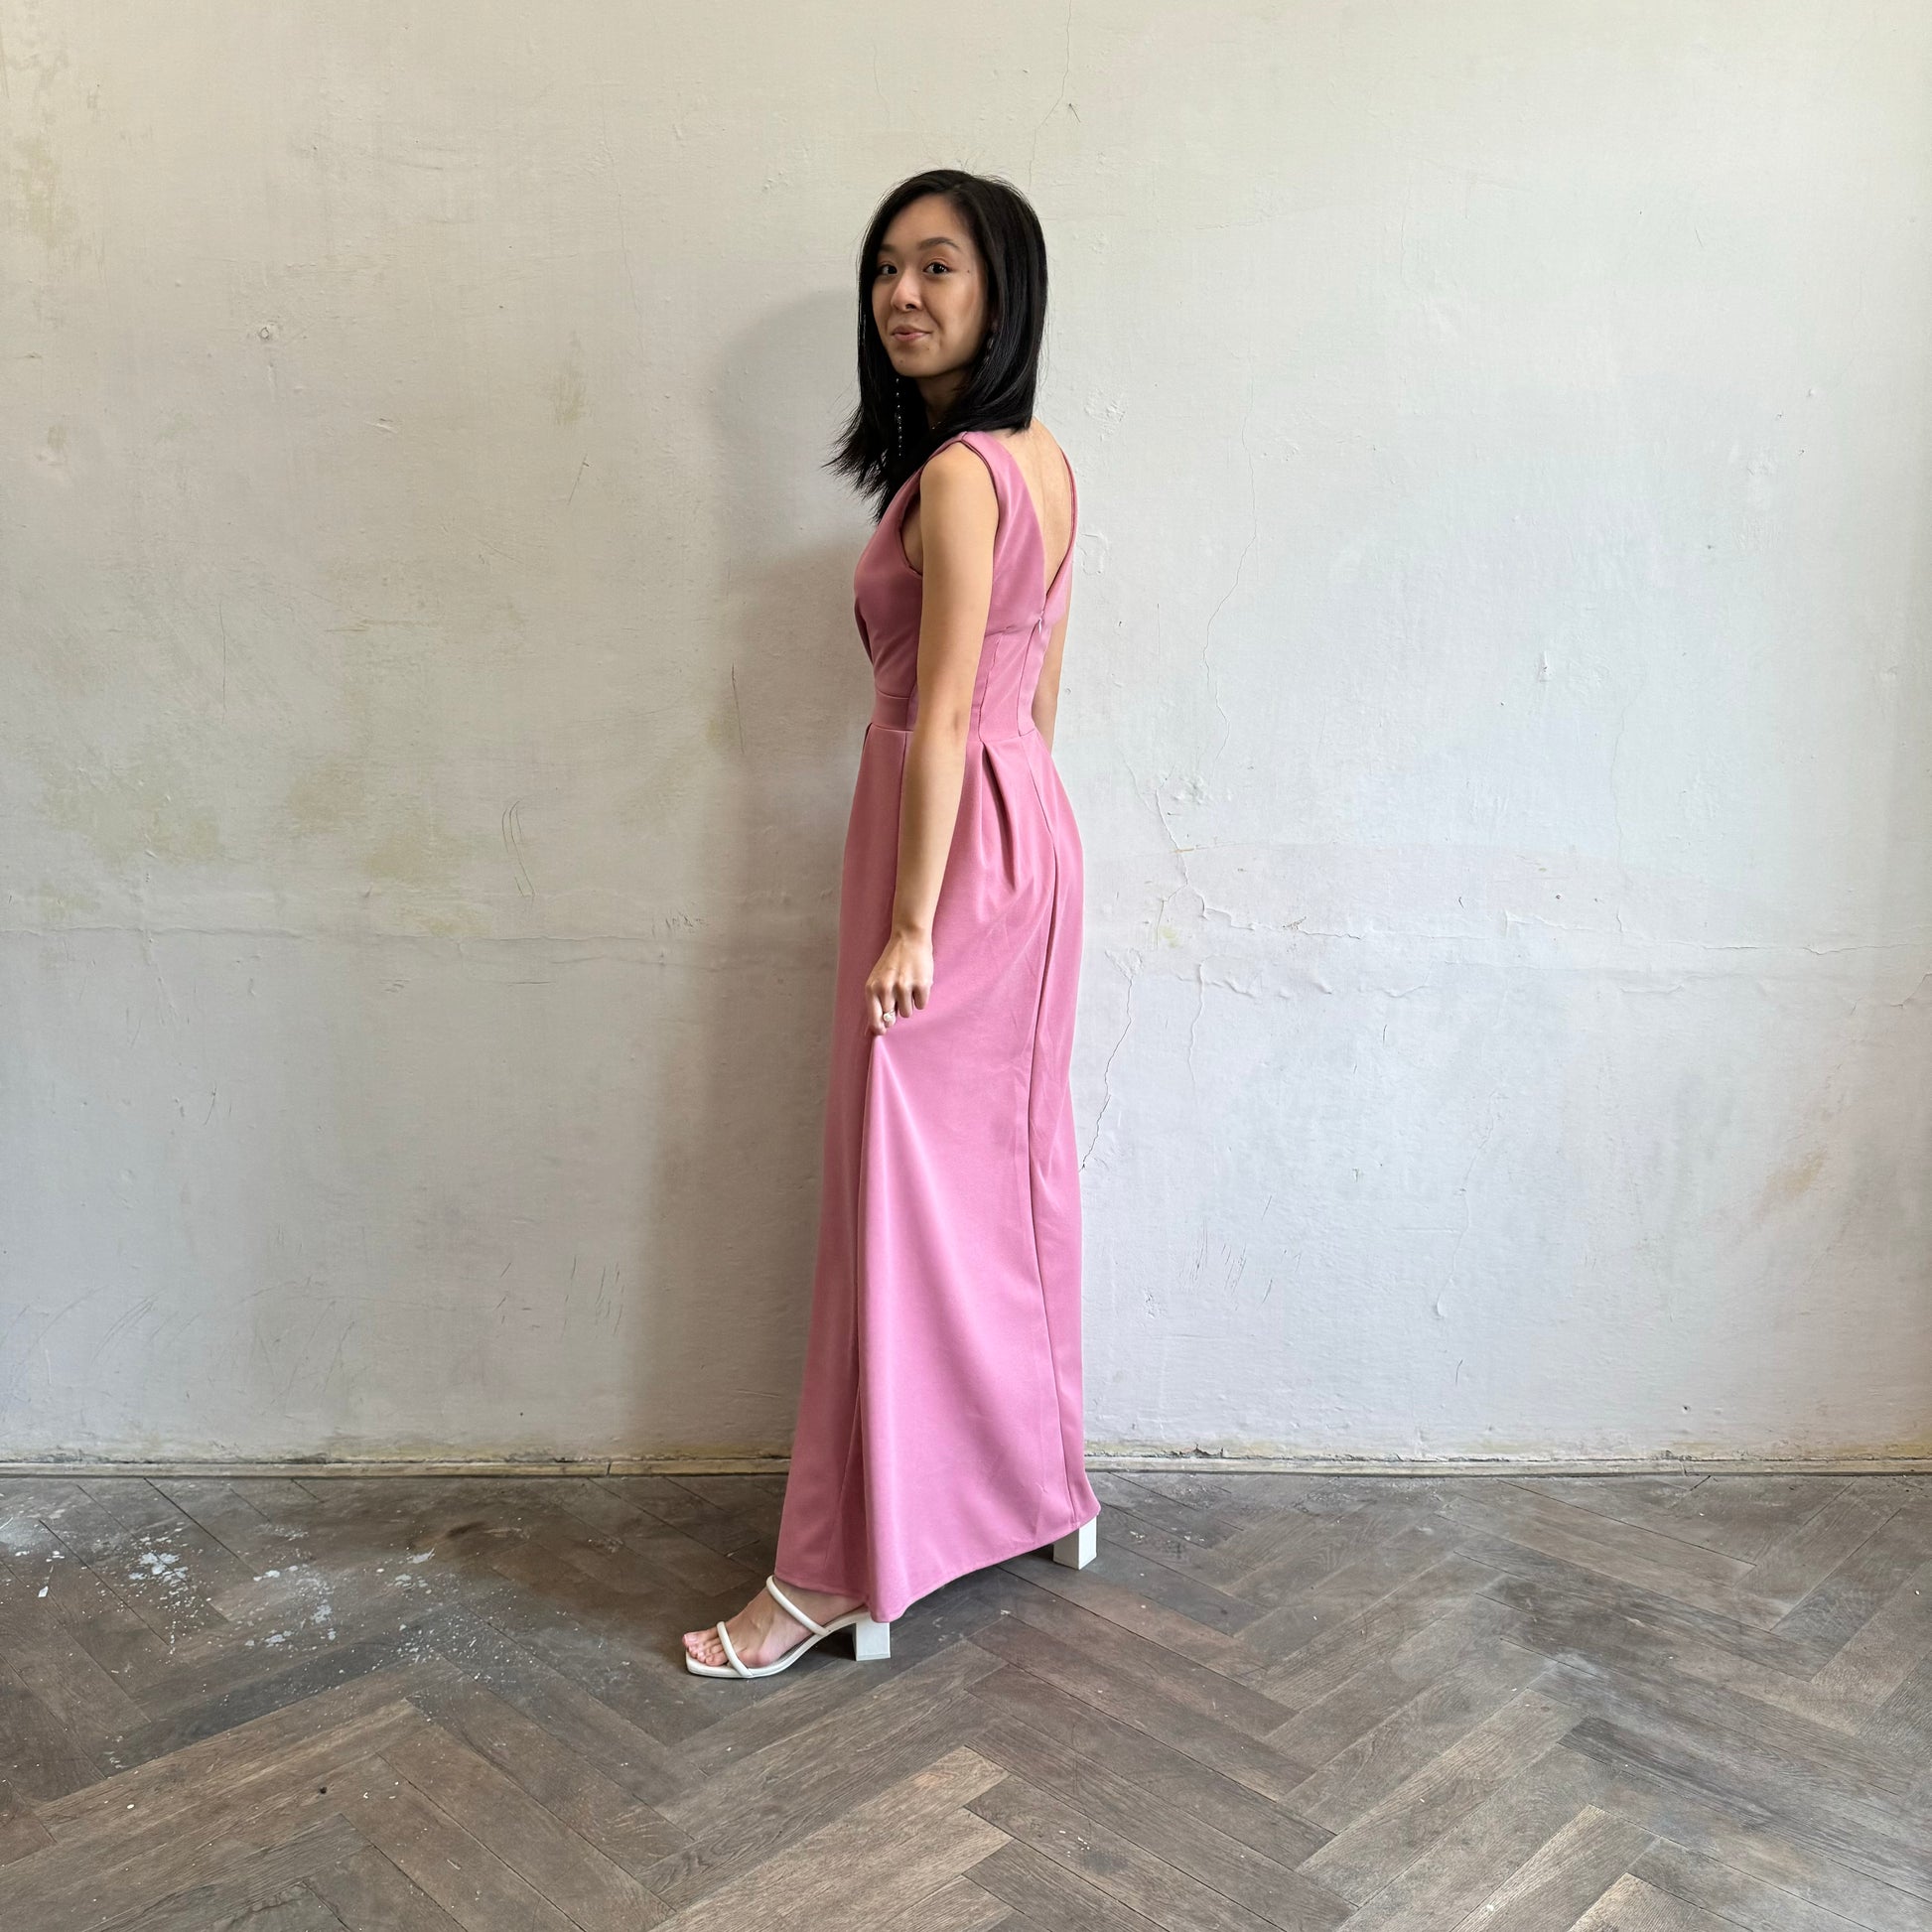 Modelka asijského původu pózující z boku oblečená ve tmavě růžových společenských šatech s rozparkem